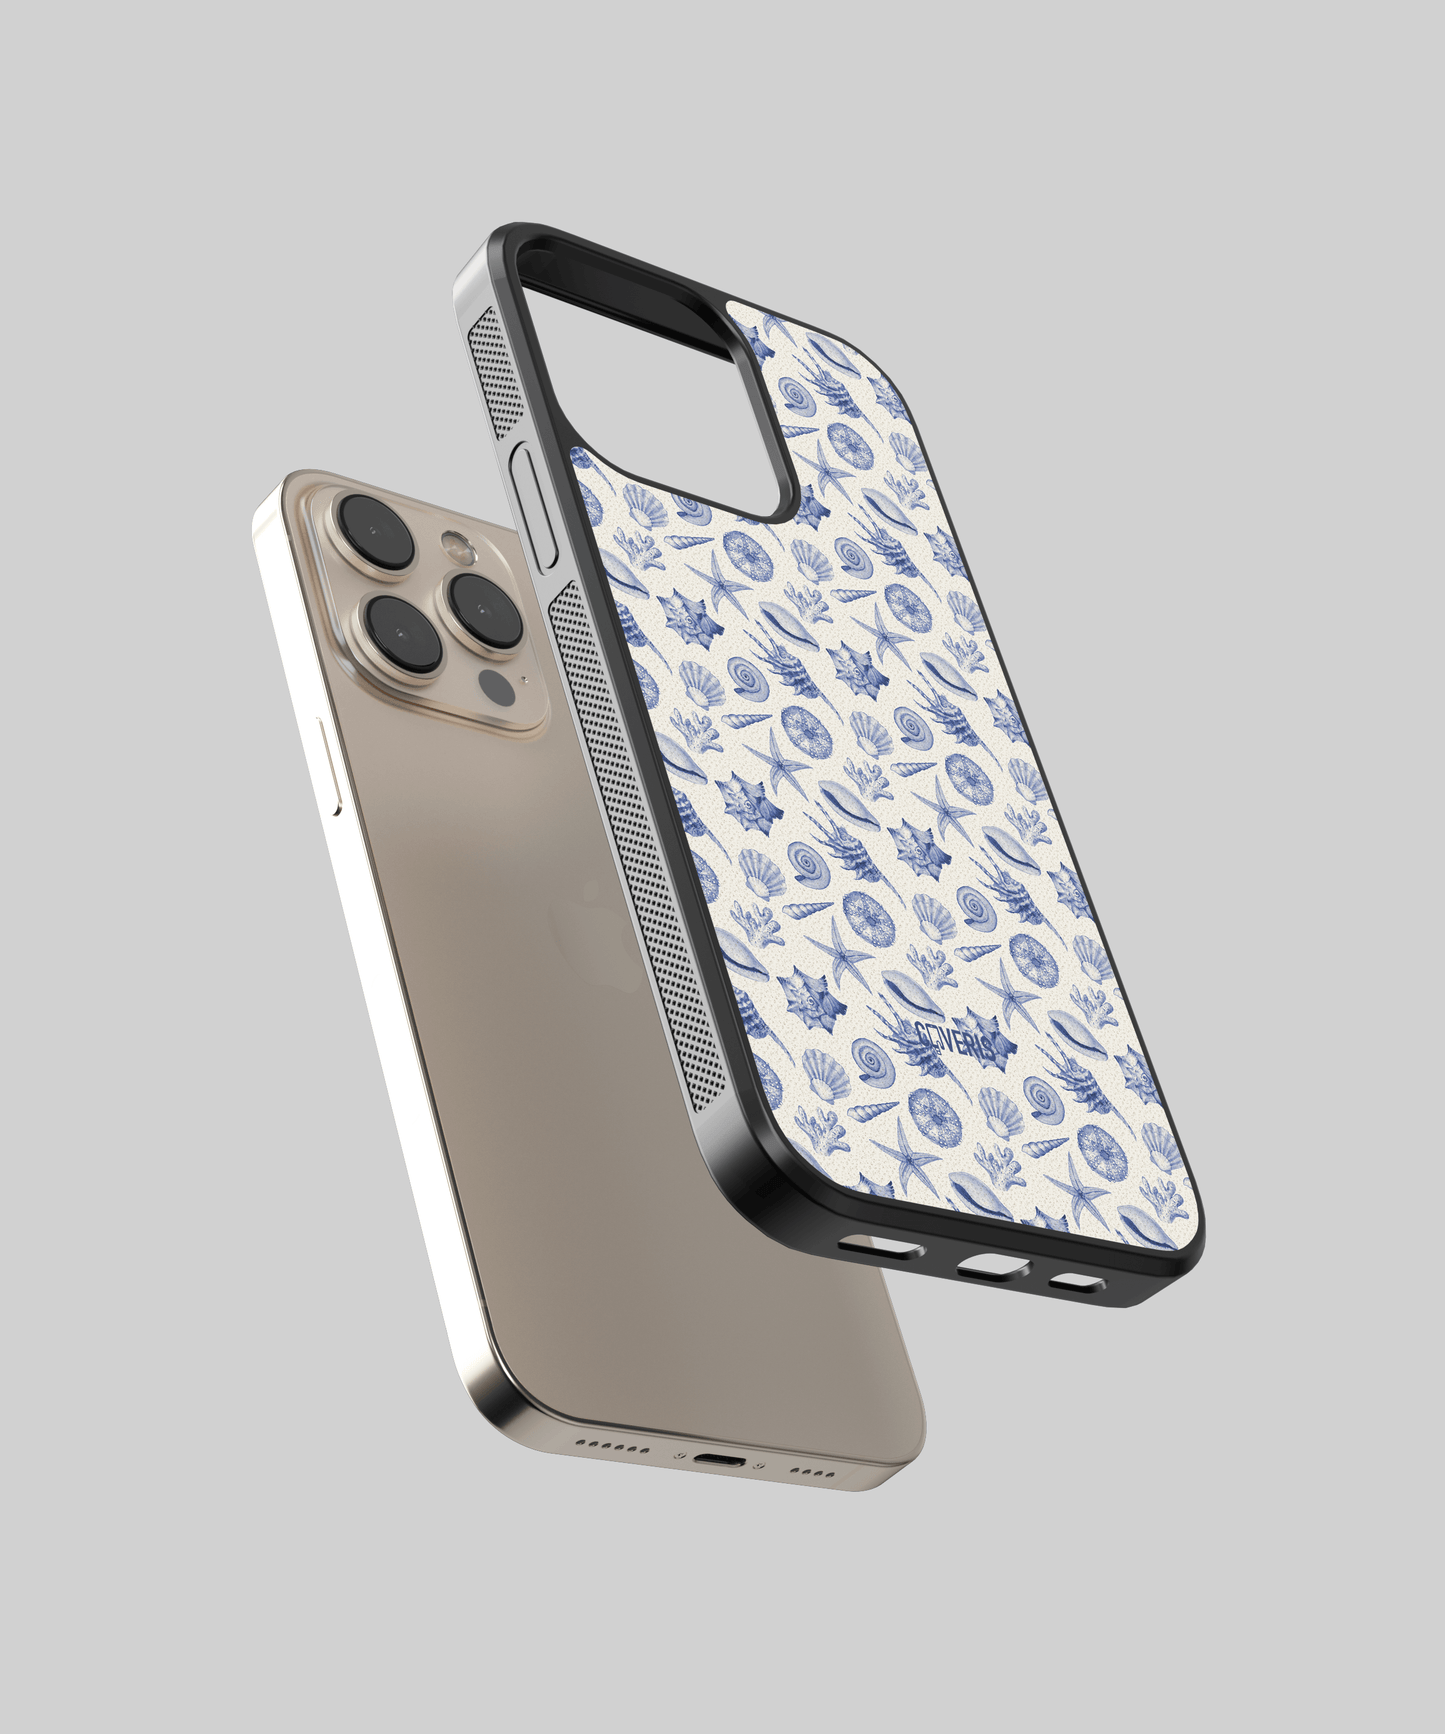 Shelluxe - iPhone 7plus / 8plus phone case